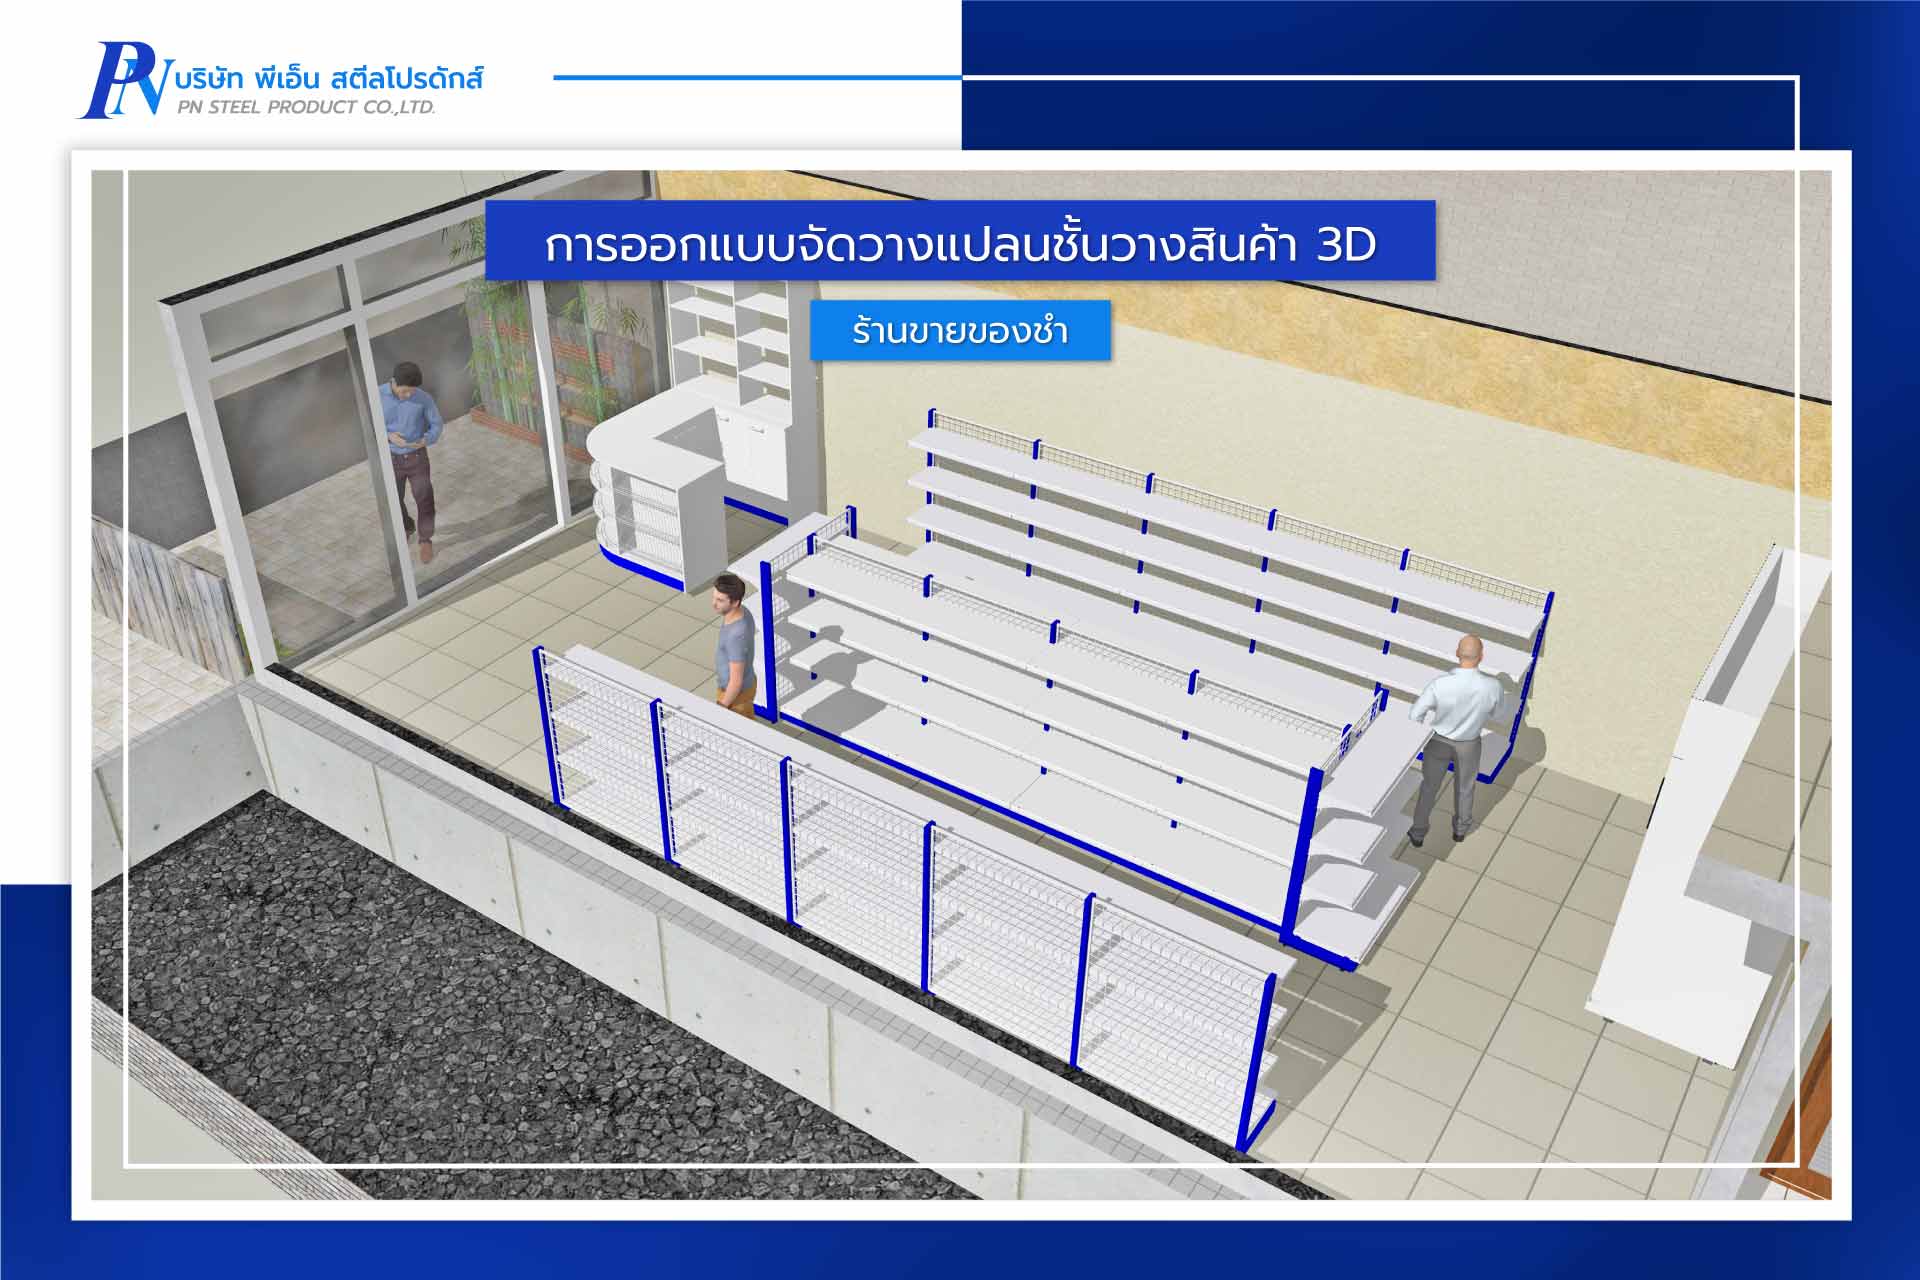 การออกแบบร้านค้า 3D จัดวางแผนผังร้านขายของชำ